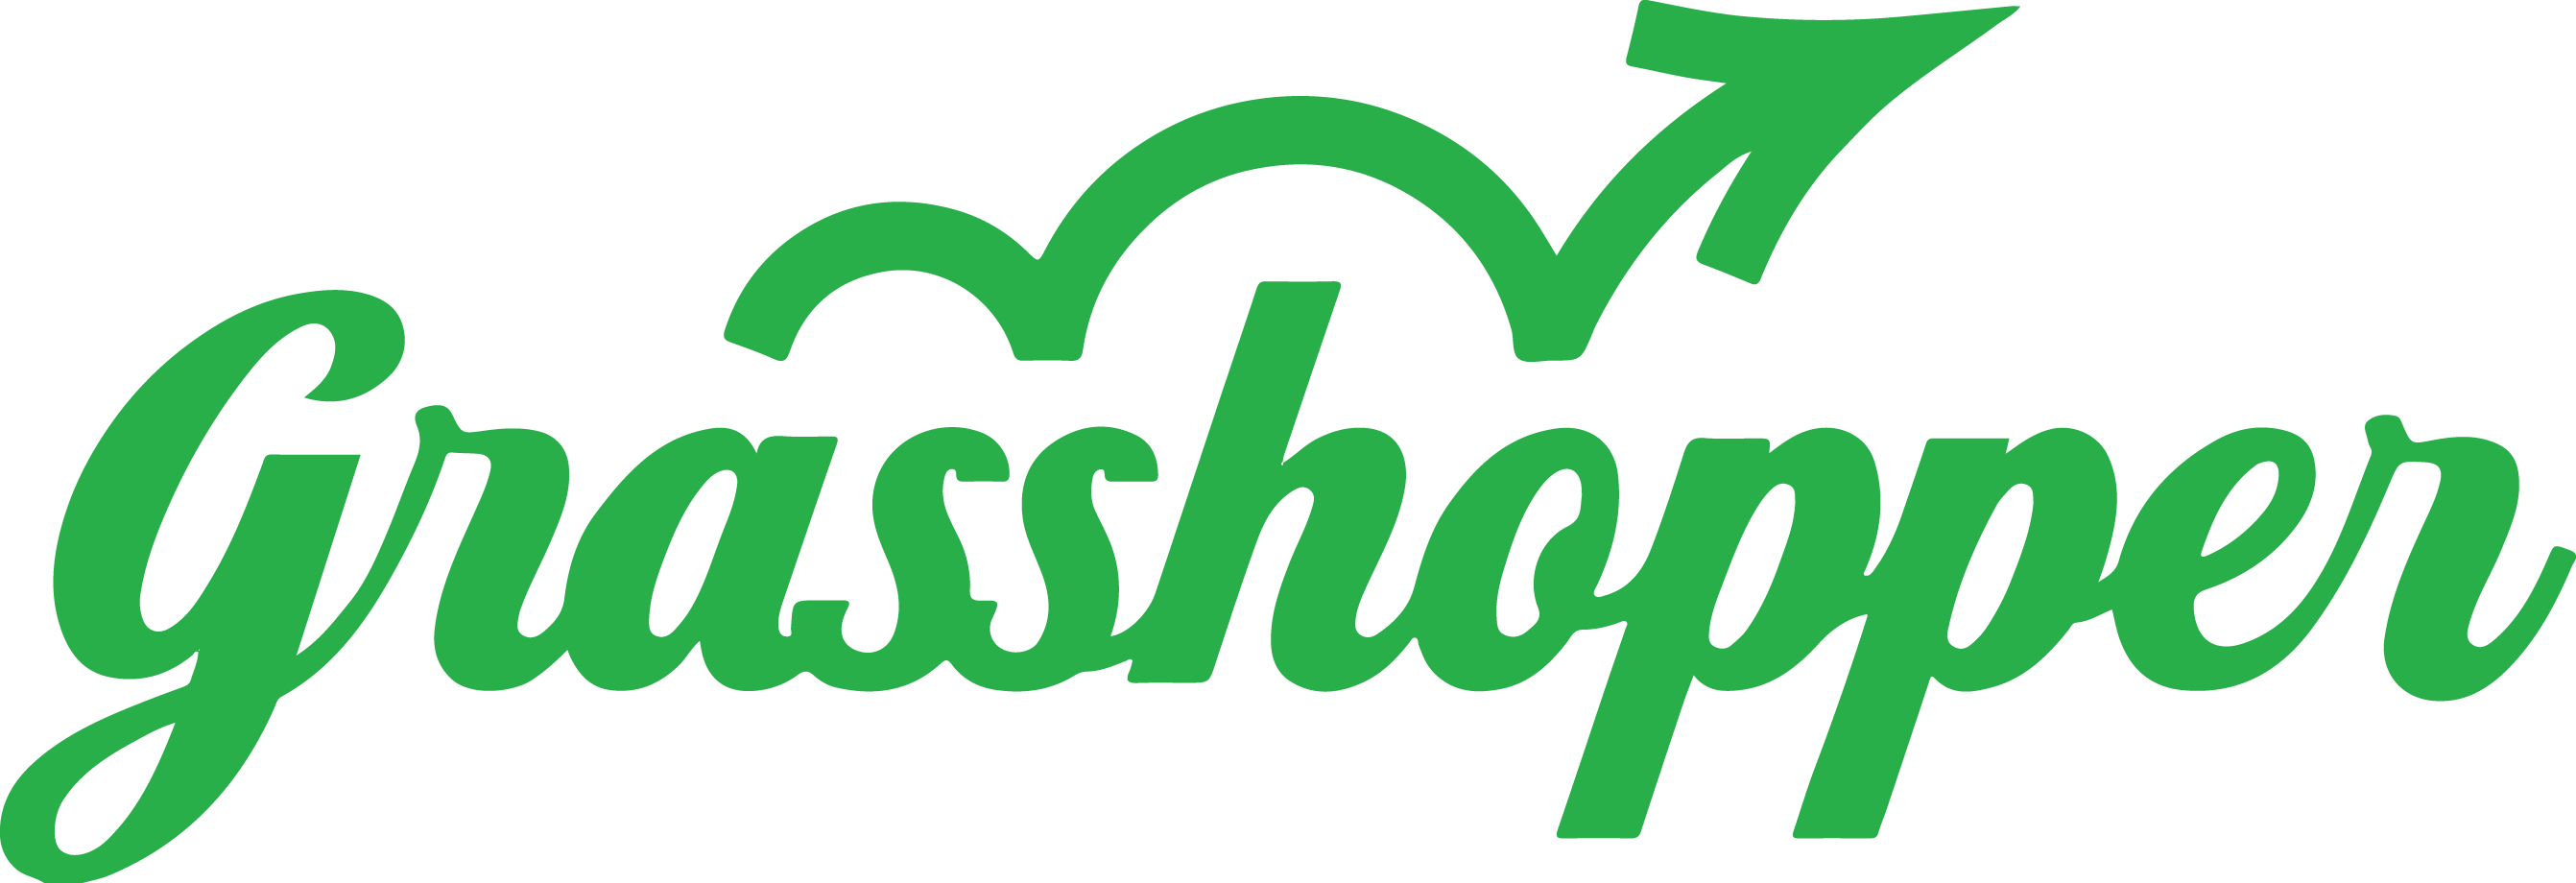 Grasshopper Energy logo